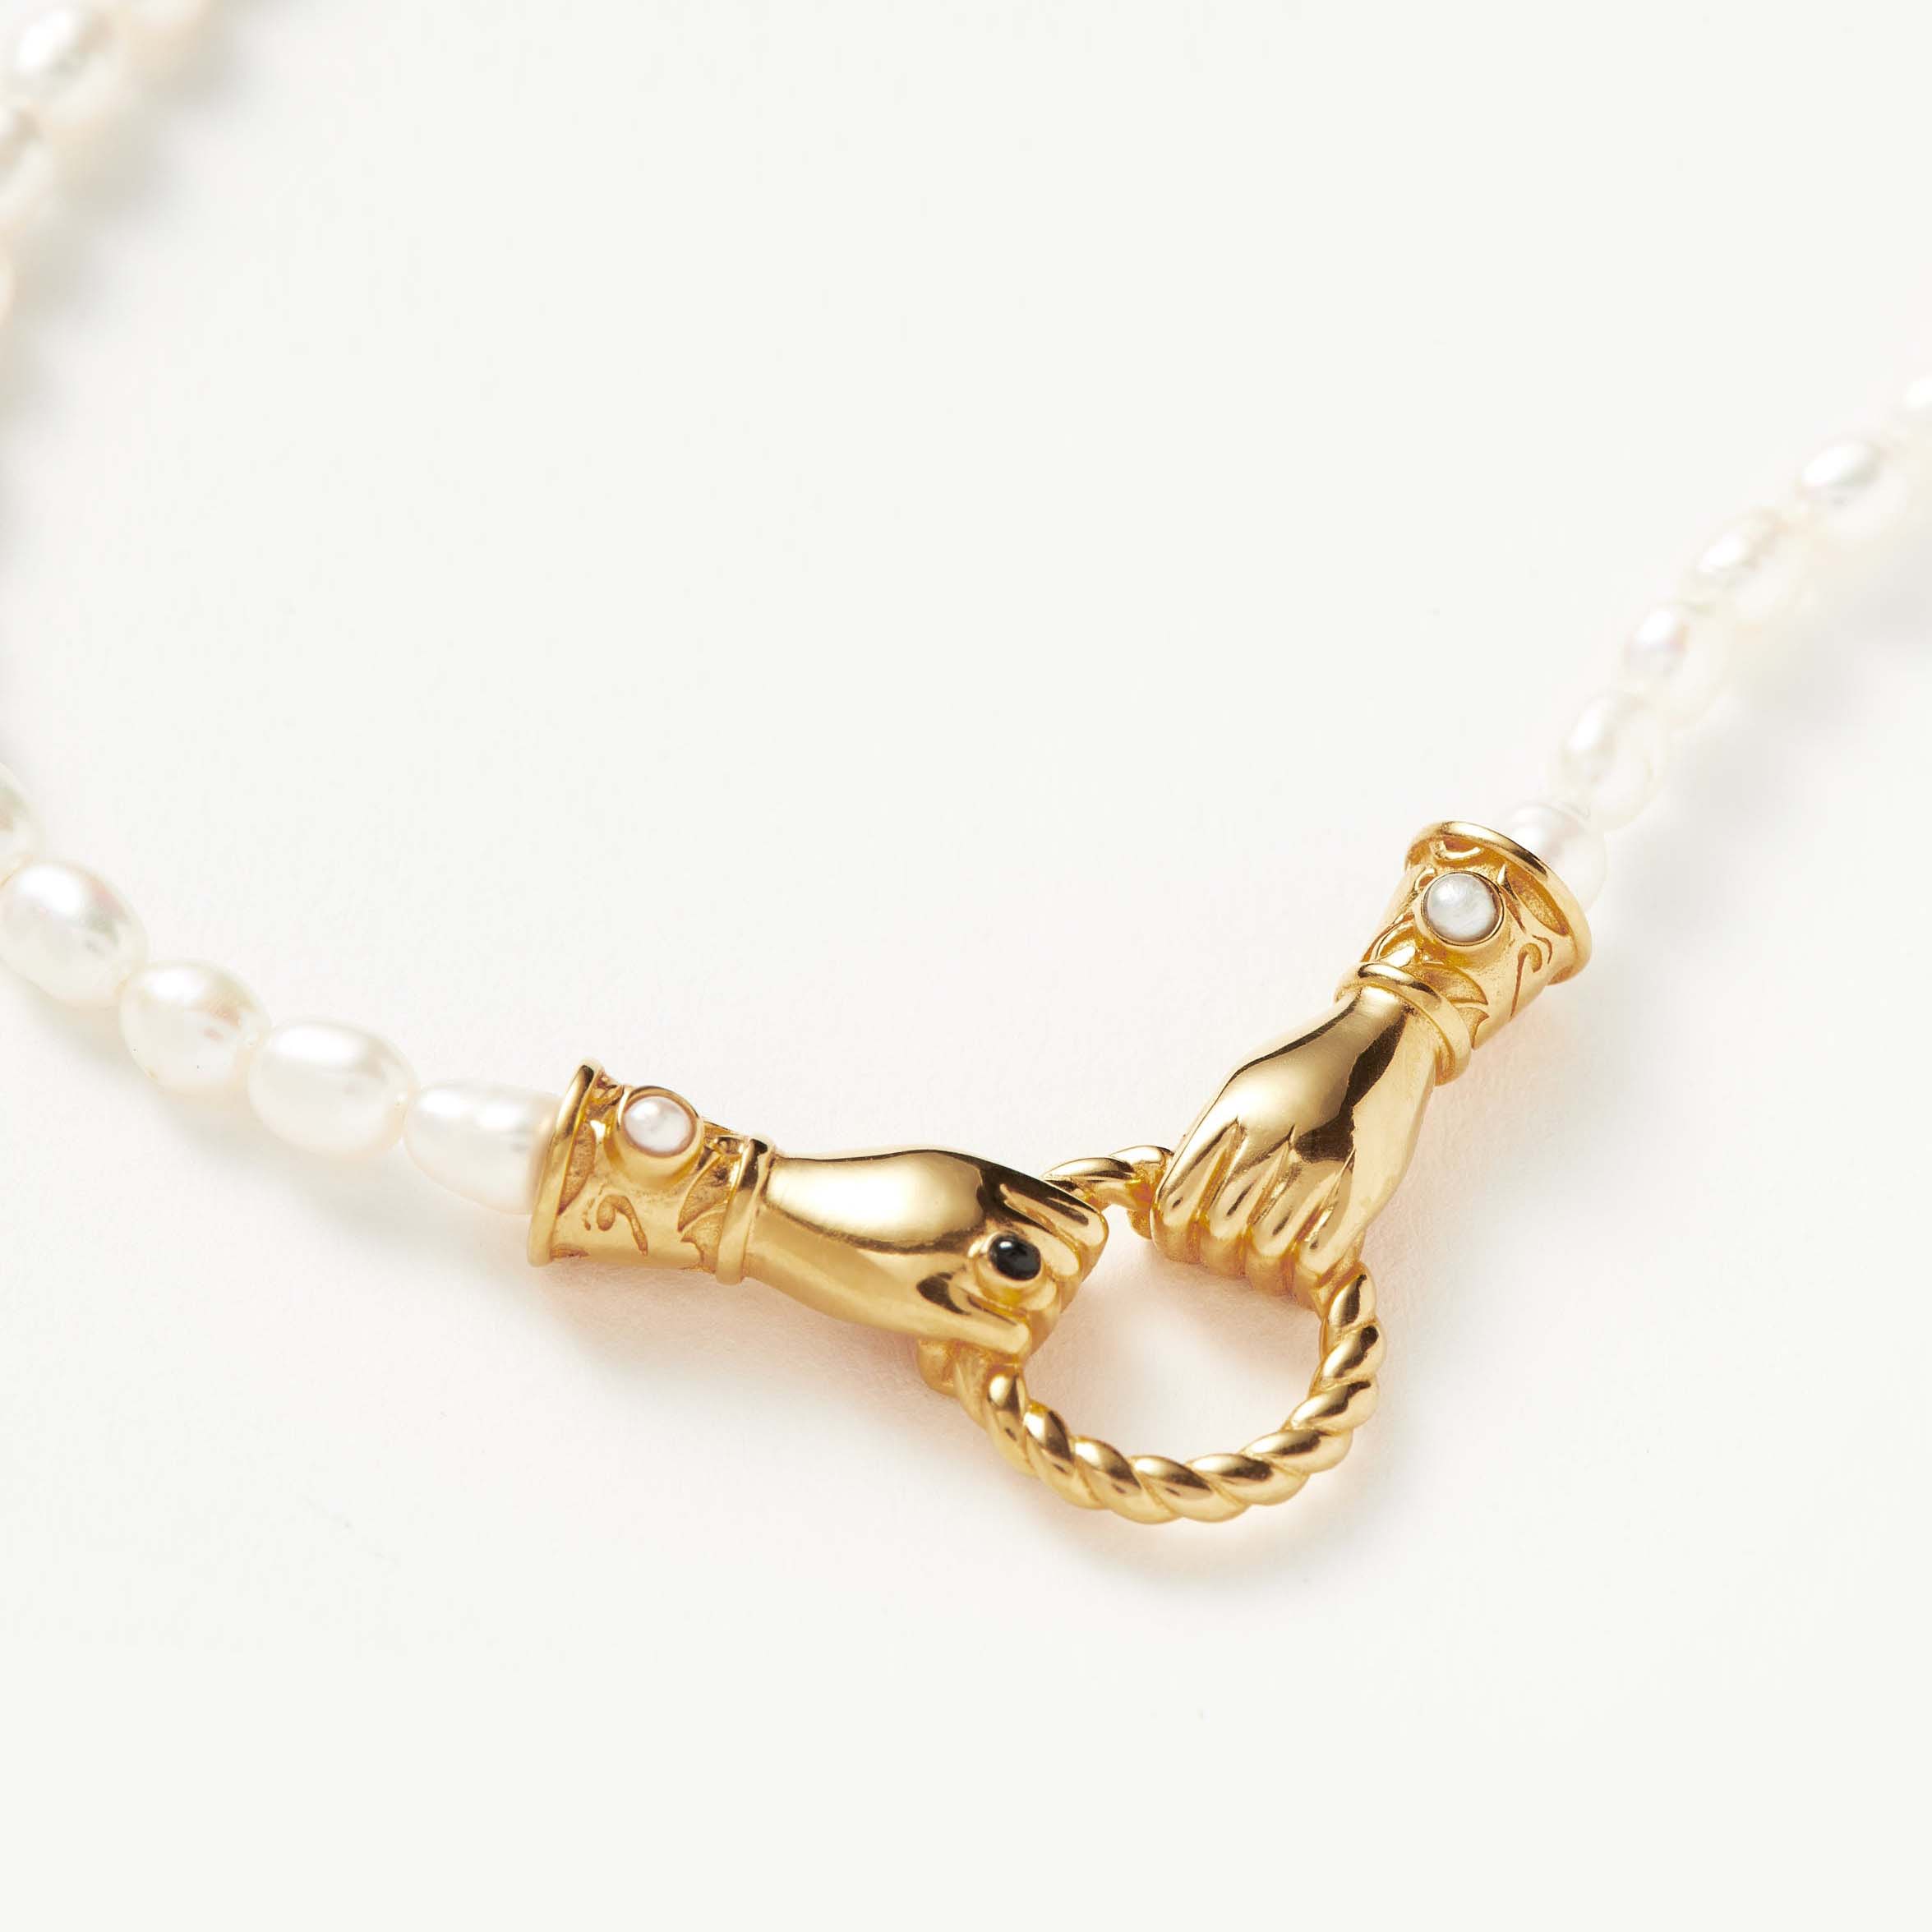 カスタム卸売ジュエリープロバイダーのハリス・リードは真珠のネックレスを手がけています